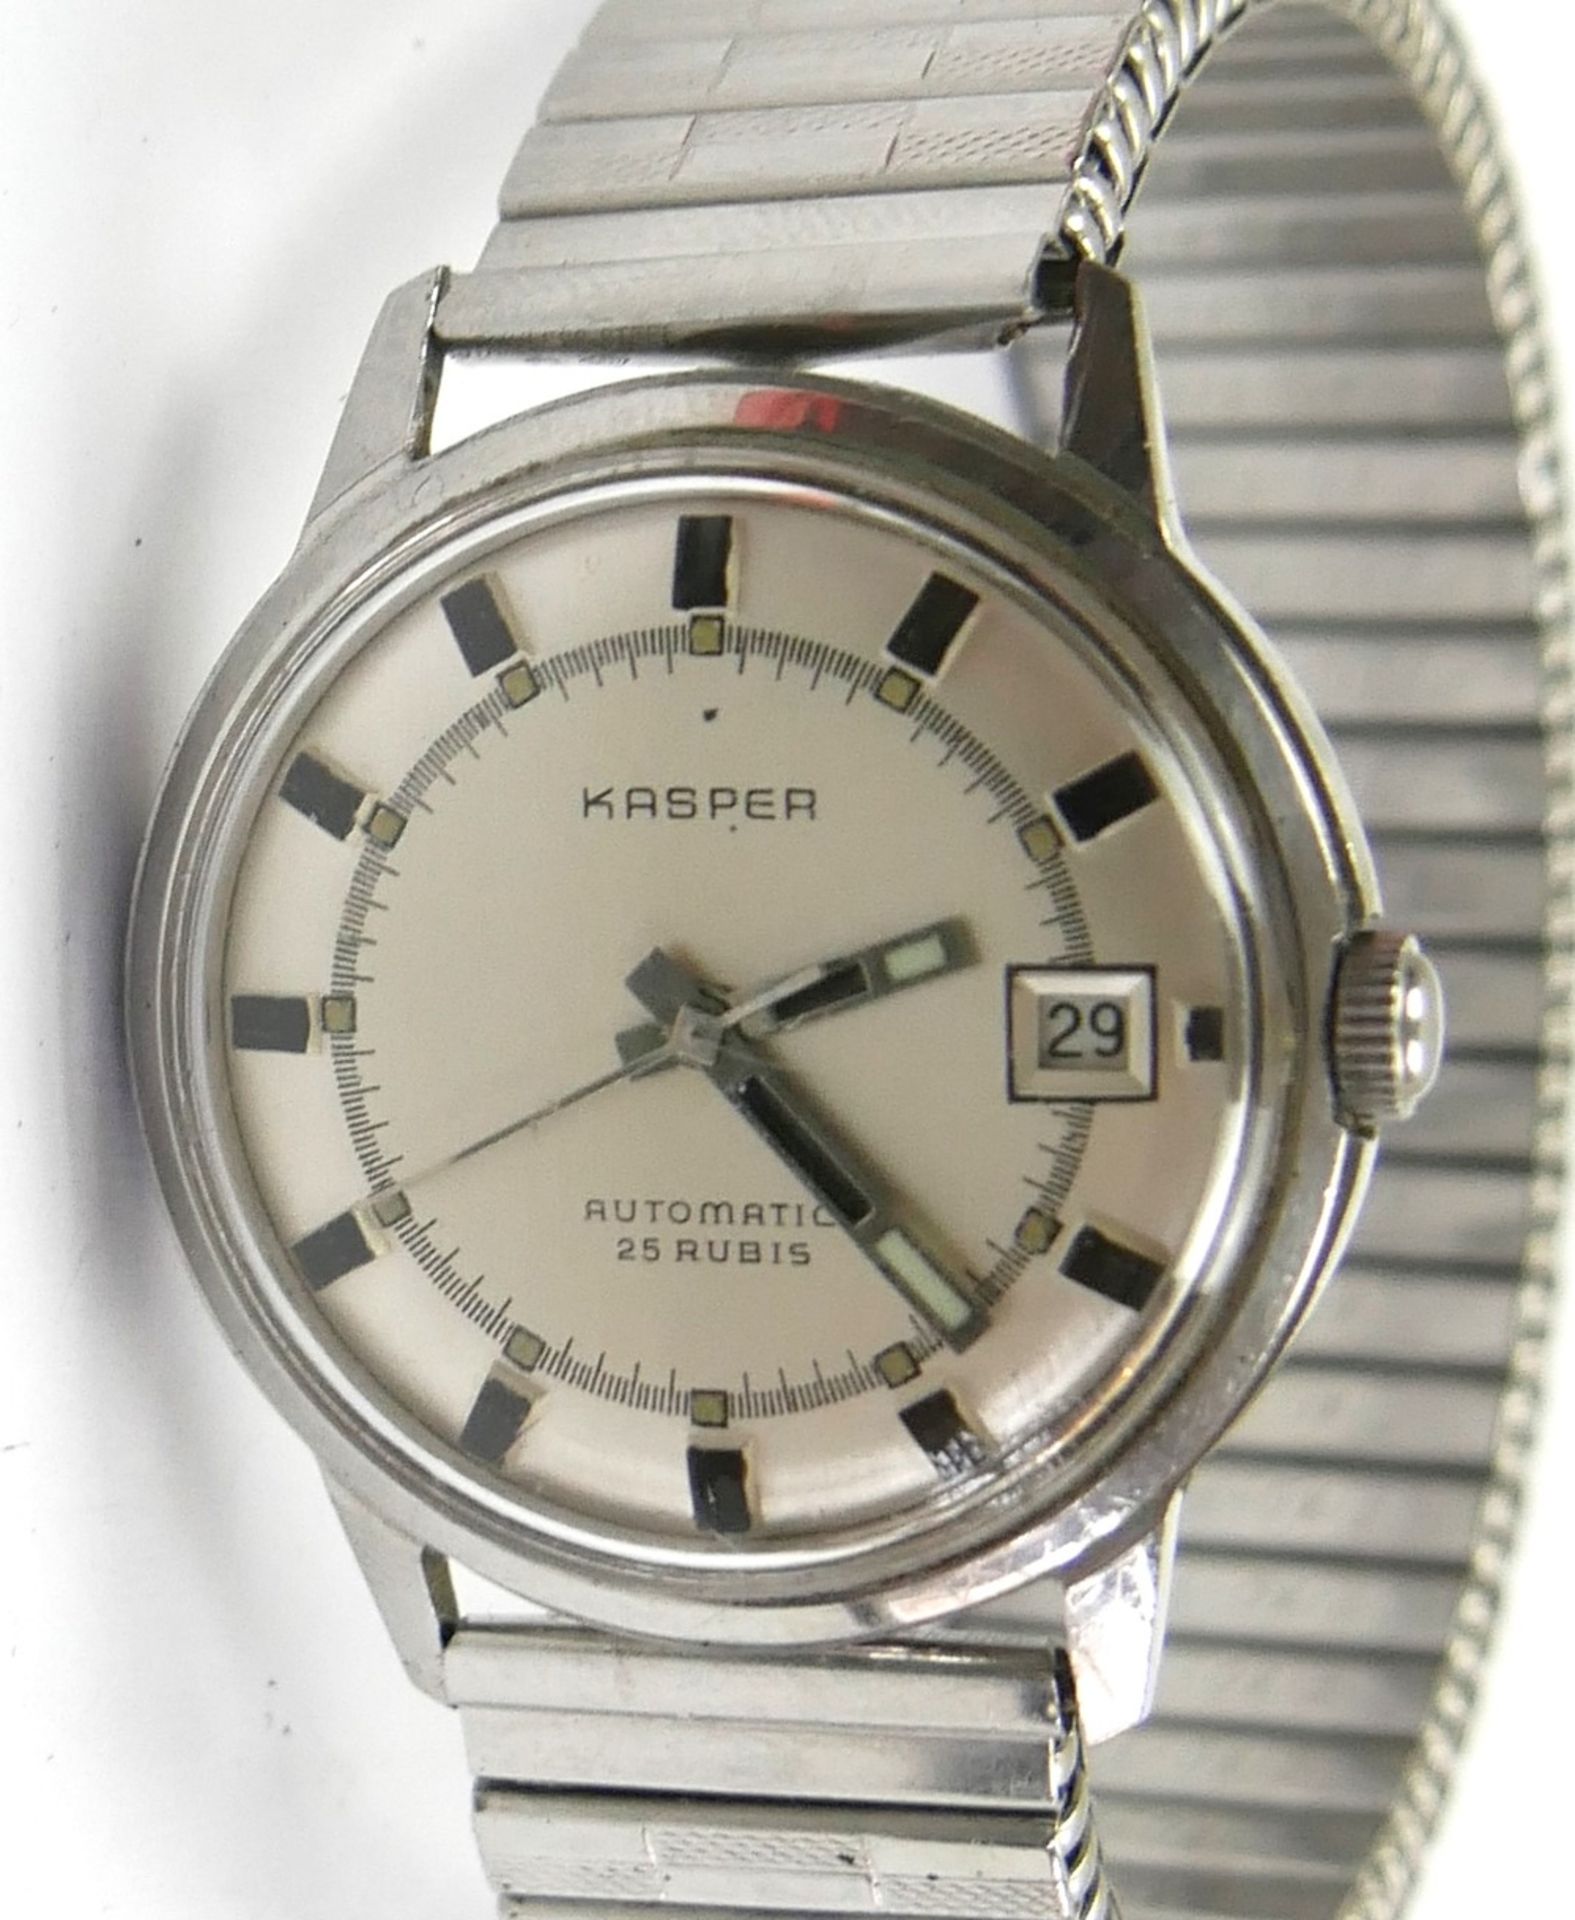 Herren Armbanduhr Vintage Kasper Automatic 25 Jewels mit Datumsanzeige. Funktion geprüft, guter - Bild 2 aus 2